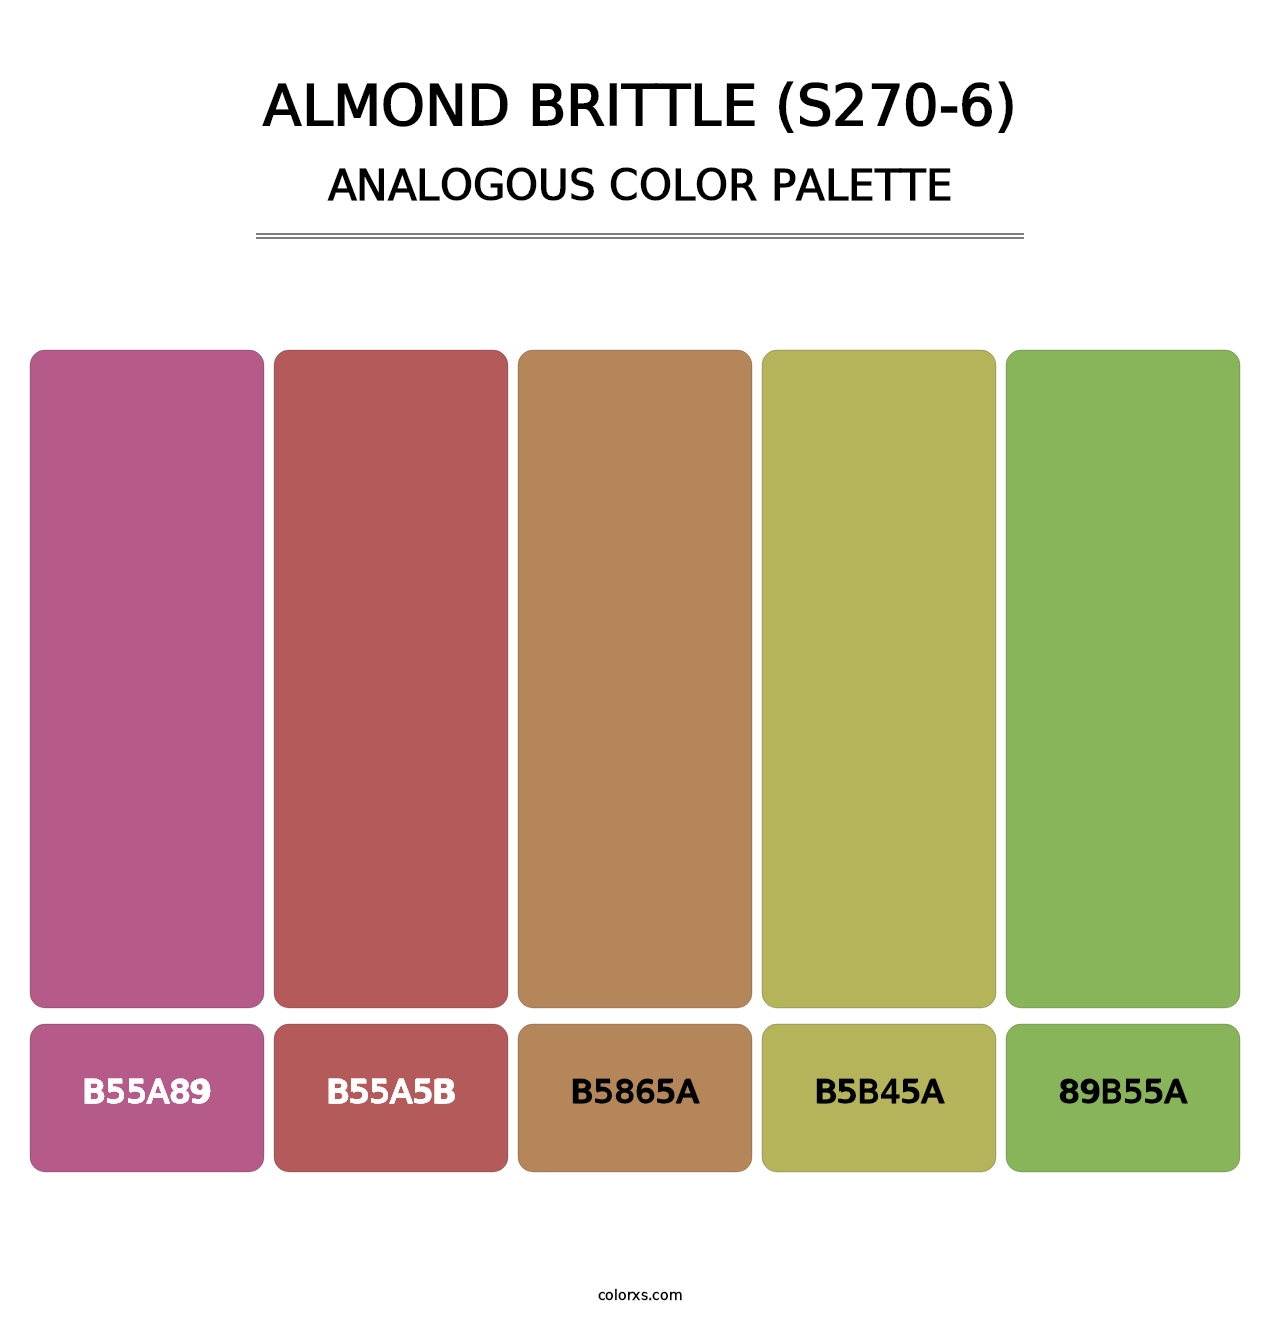 Almond Brittle (S270-6) - Analogous Color Palette